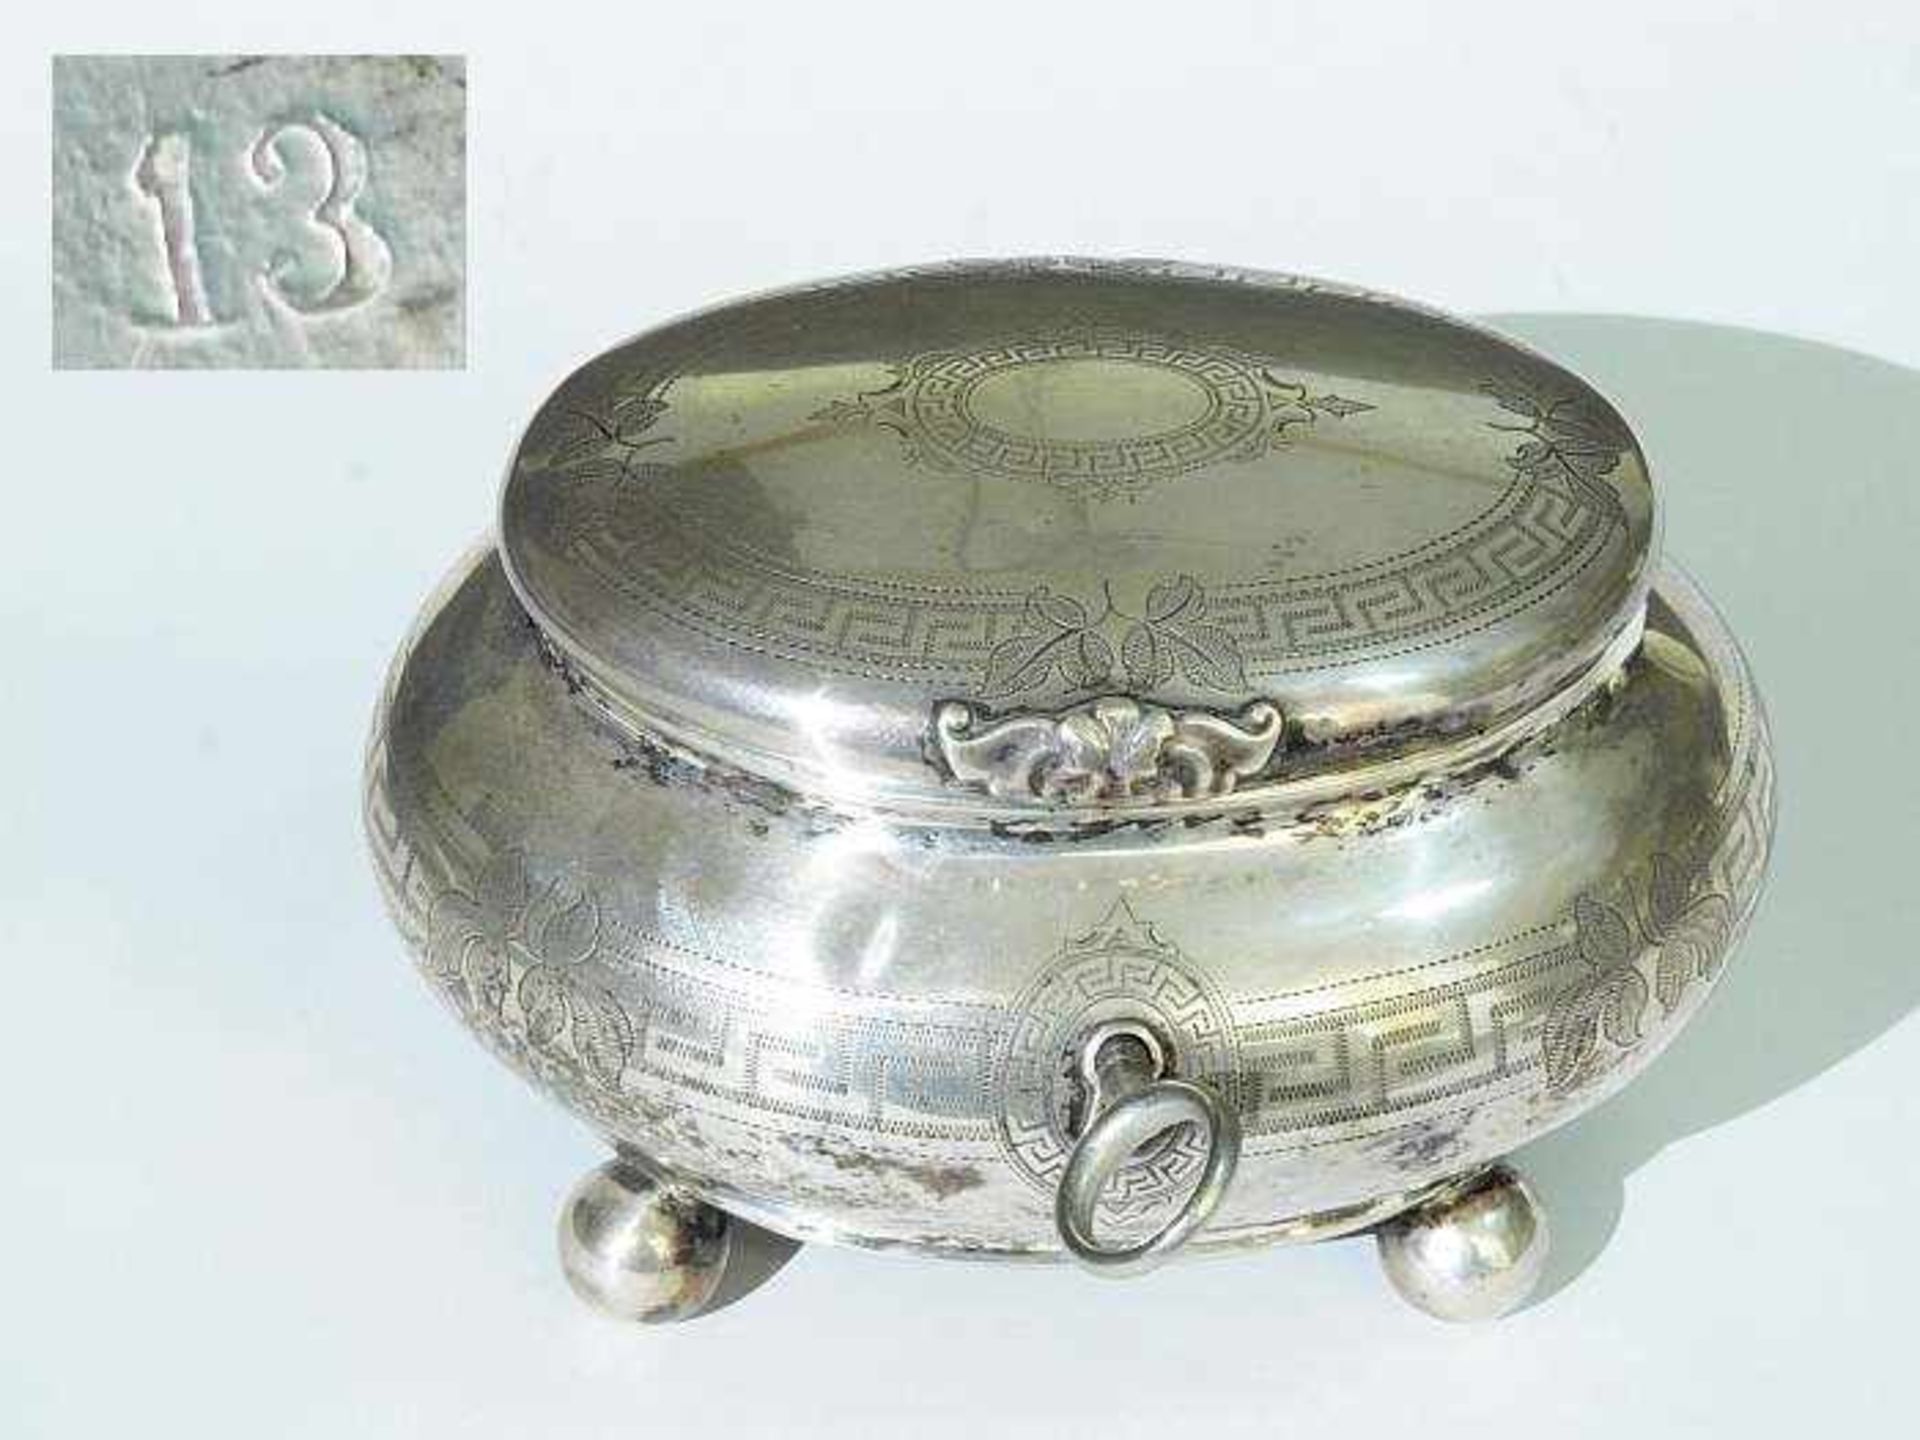 Zuckerdose. Zuckerdose, 19. Jahrhundert. Wien, 13lötiges Silber, Punzen ungedeutet. Dose auf